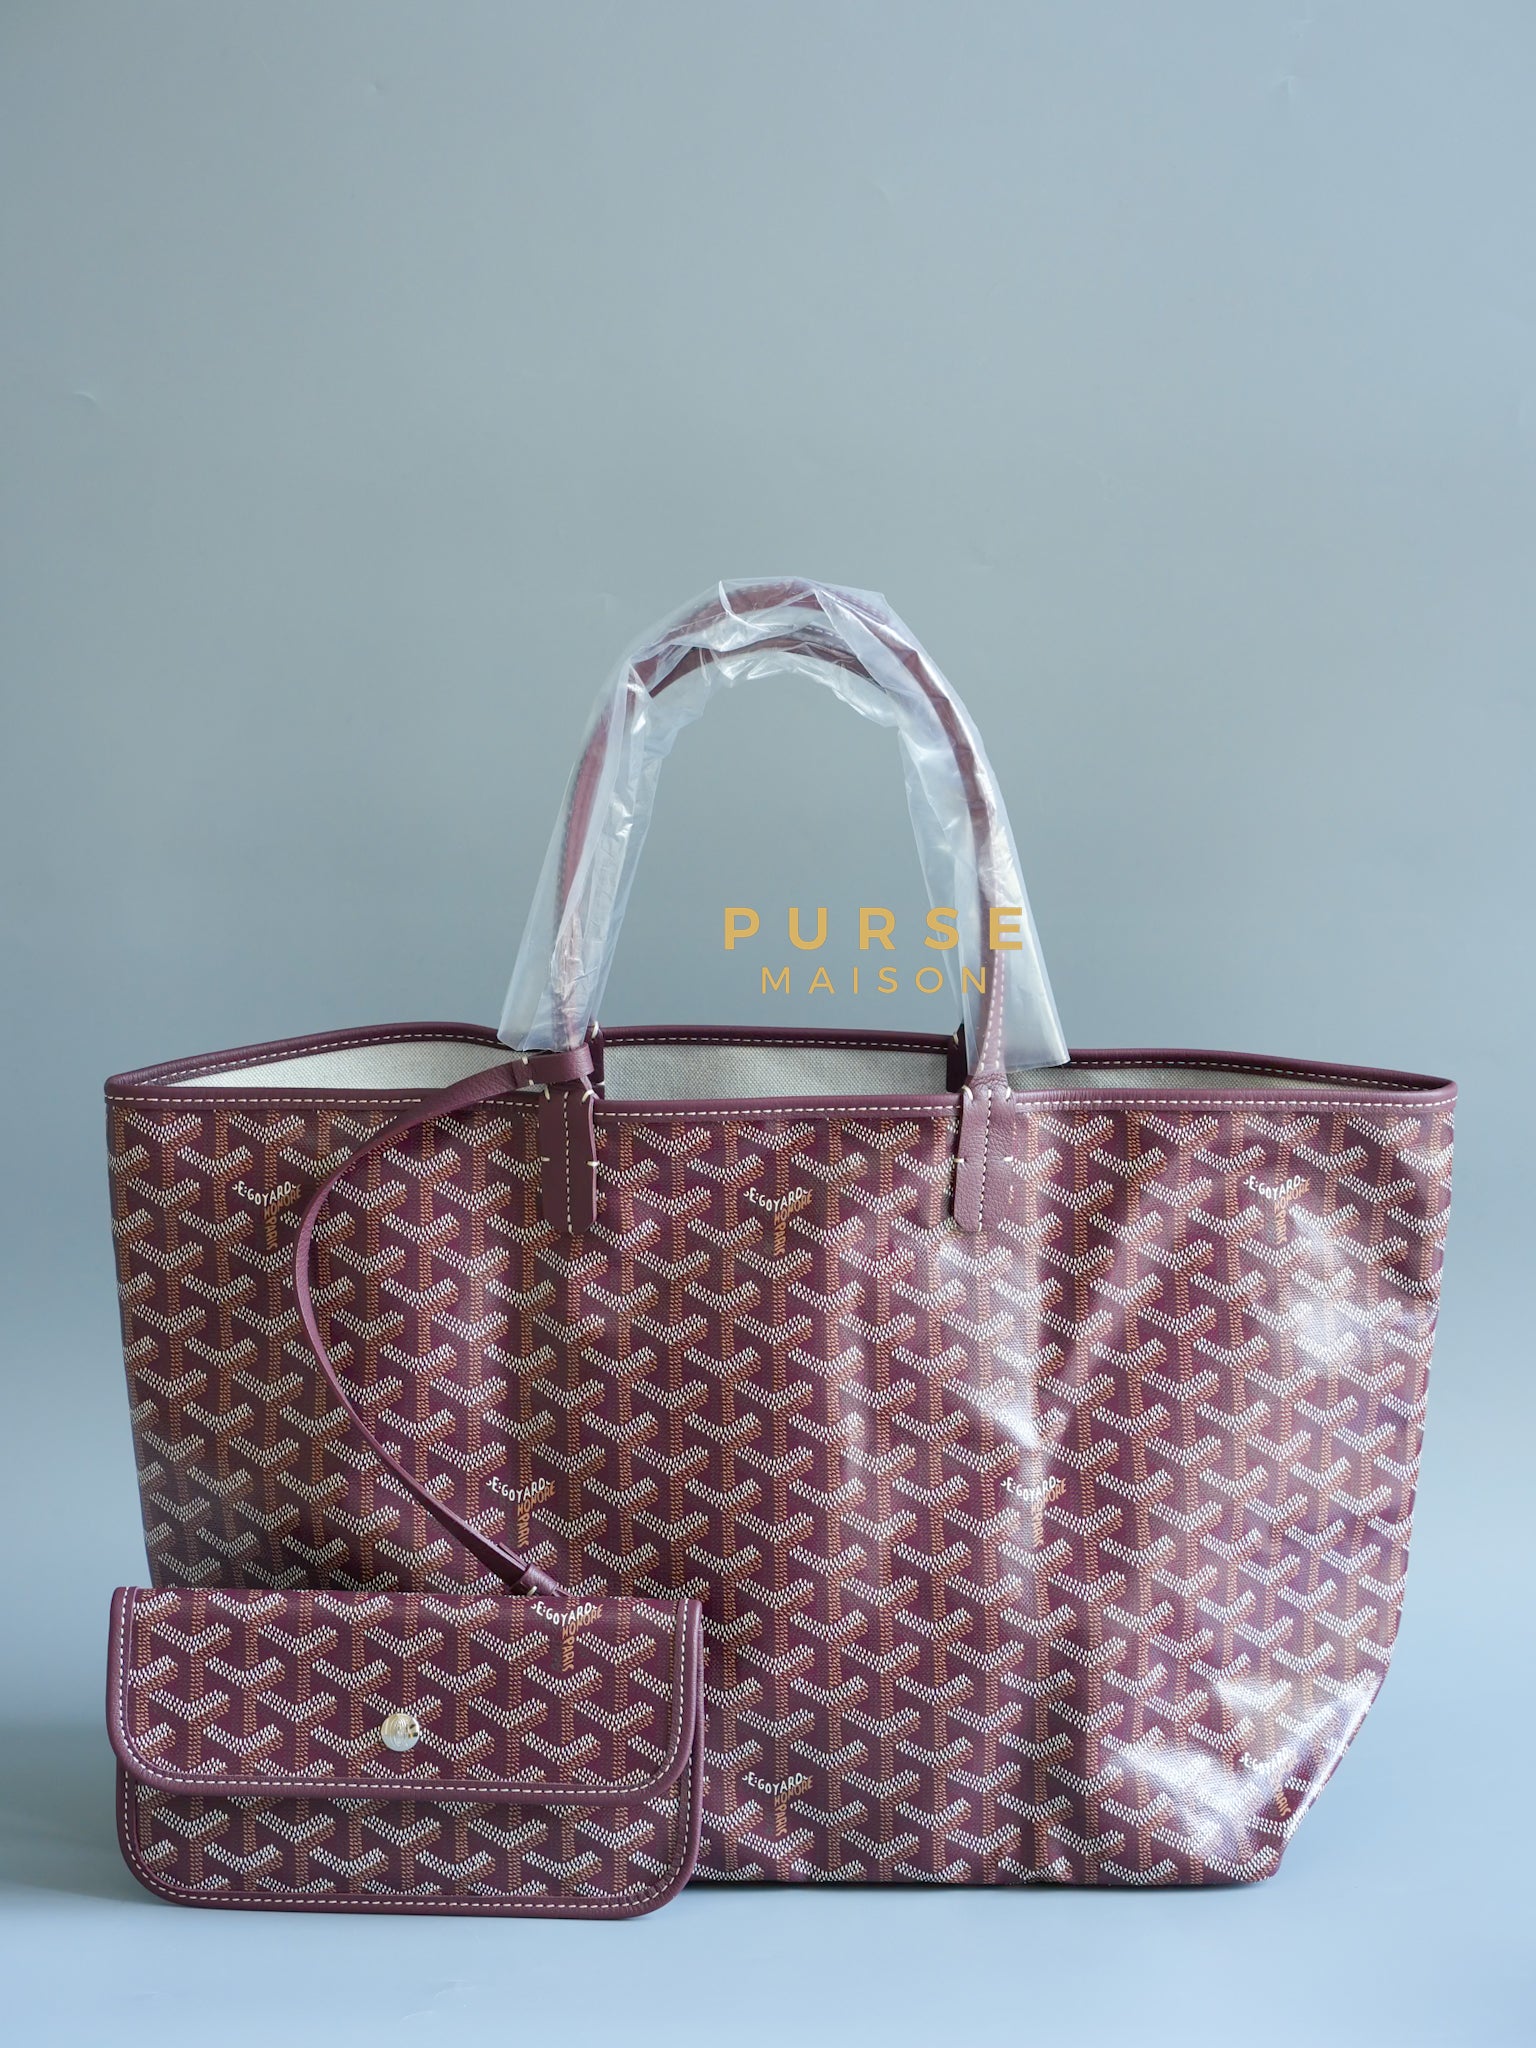 Sac Saint Louis PM Tote Bag Bordeaux (Maroon) | Purse Maison Luxury Bags Shop